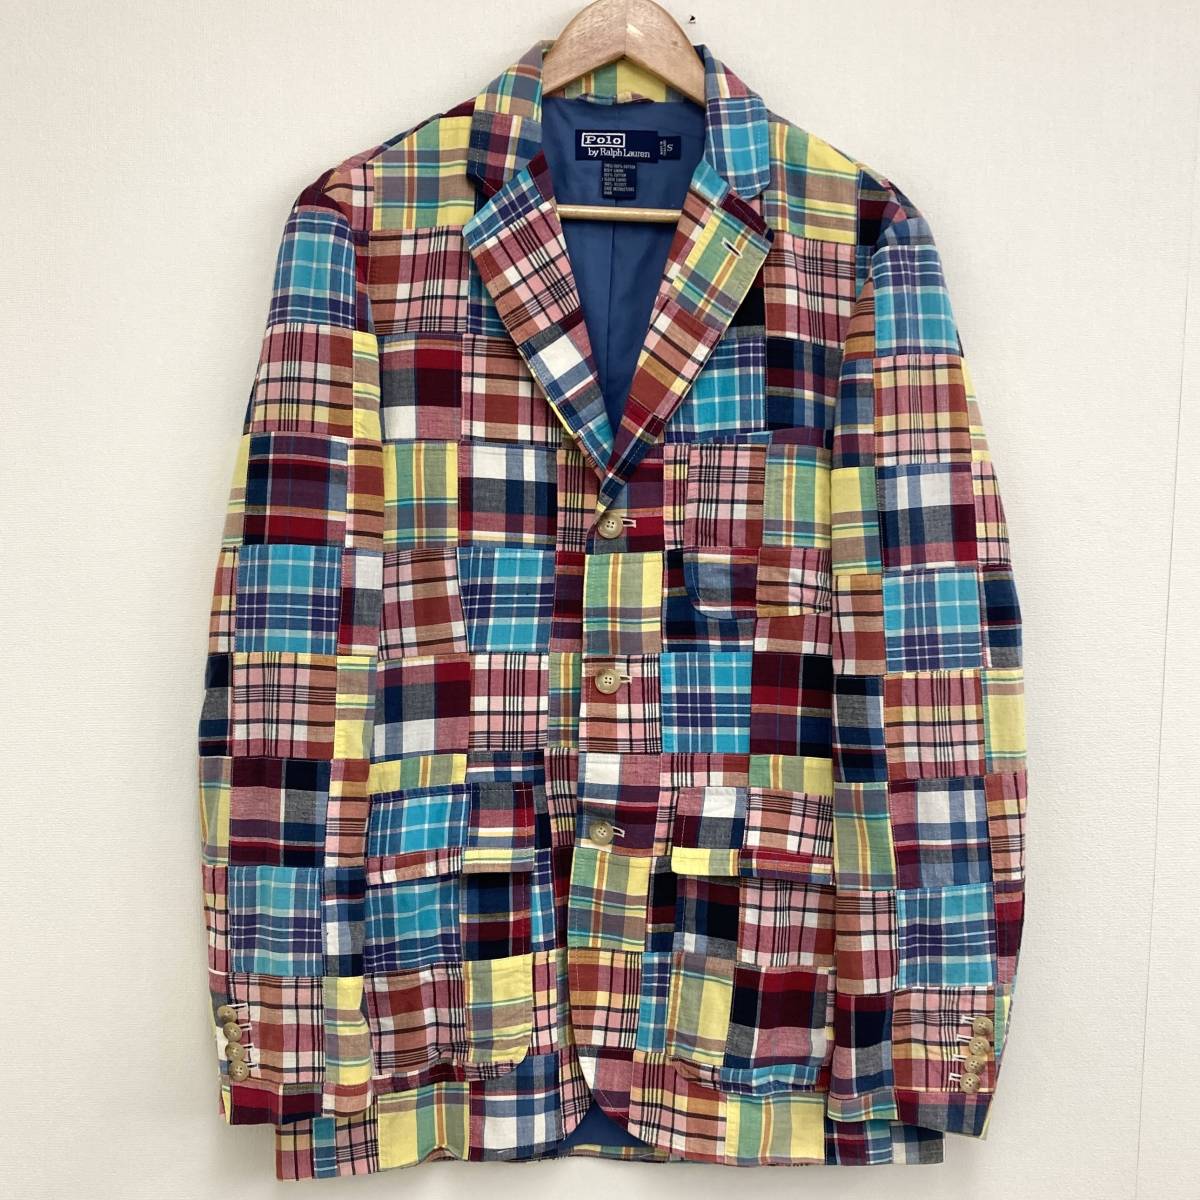 POLO RALPH LAUREN лоскутное шитье tailored jacket проверка мужской S размер Polo Ralph Lauren блейзер красочный общий рисунок 2120120